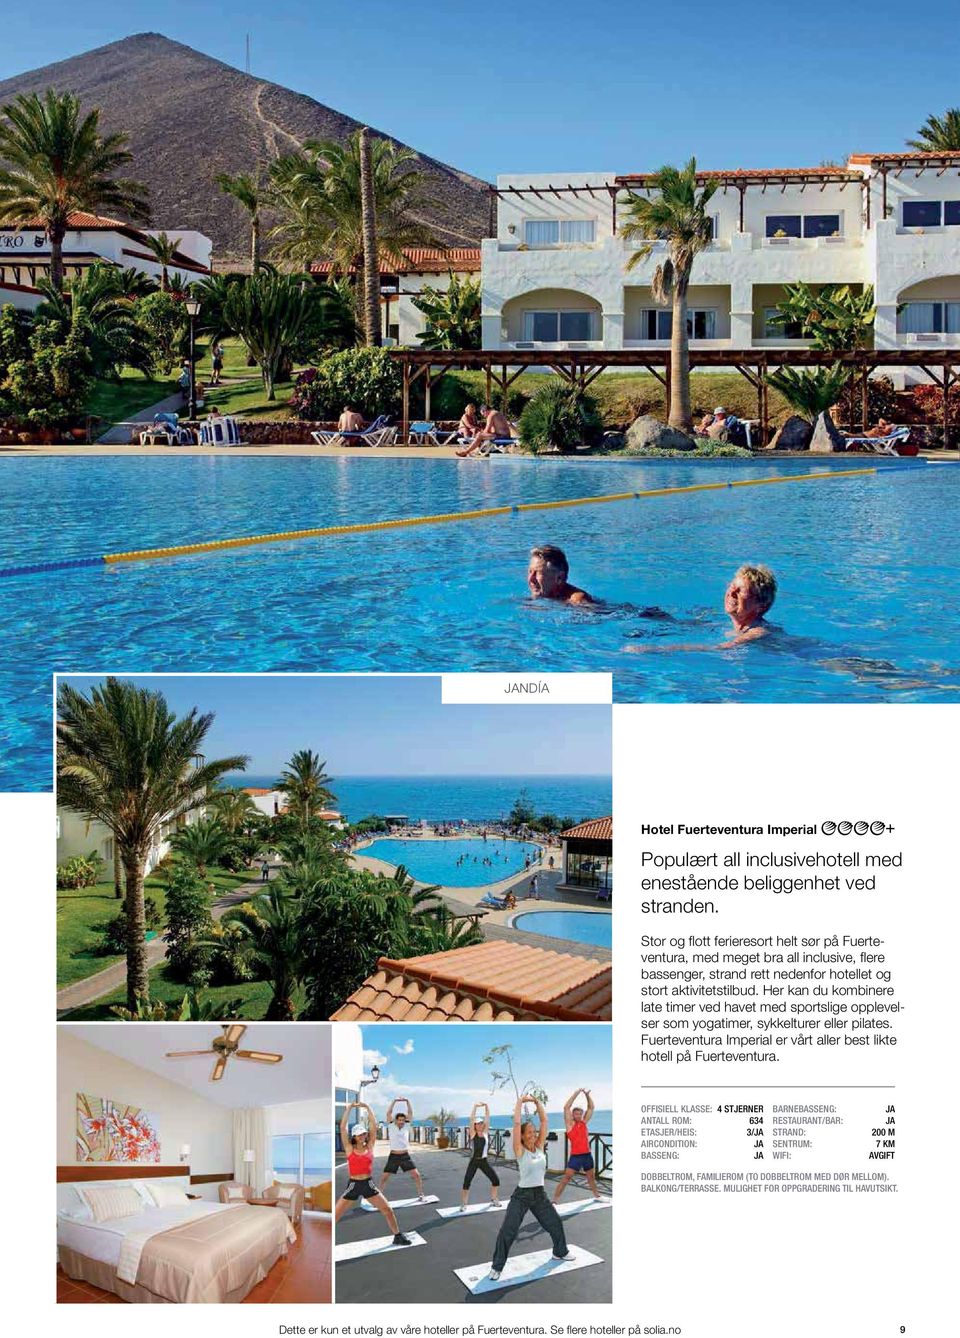 Her kan du kombinere late timer ved havet med sportslige opplevelser som yogatimer, sykkelturer eller pilates. Fuerteventura Imperial er vårt aller best likte hotell på Fuerteventura.